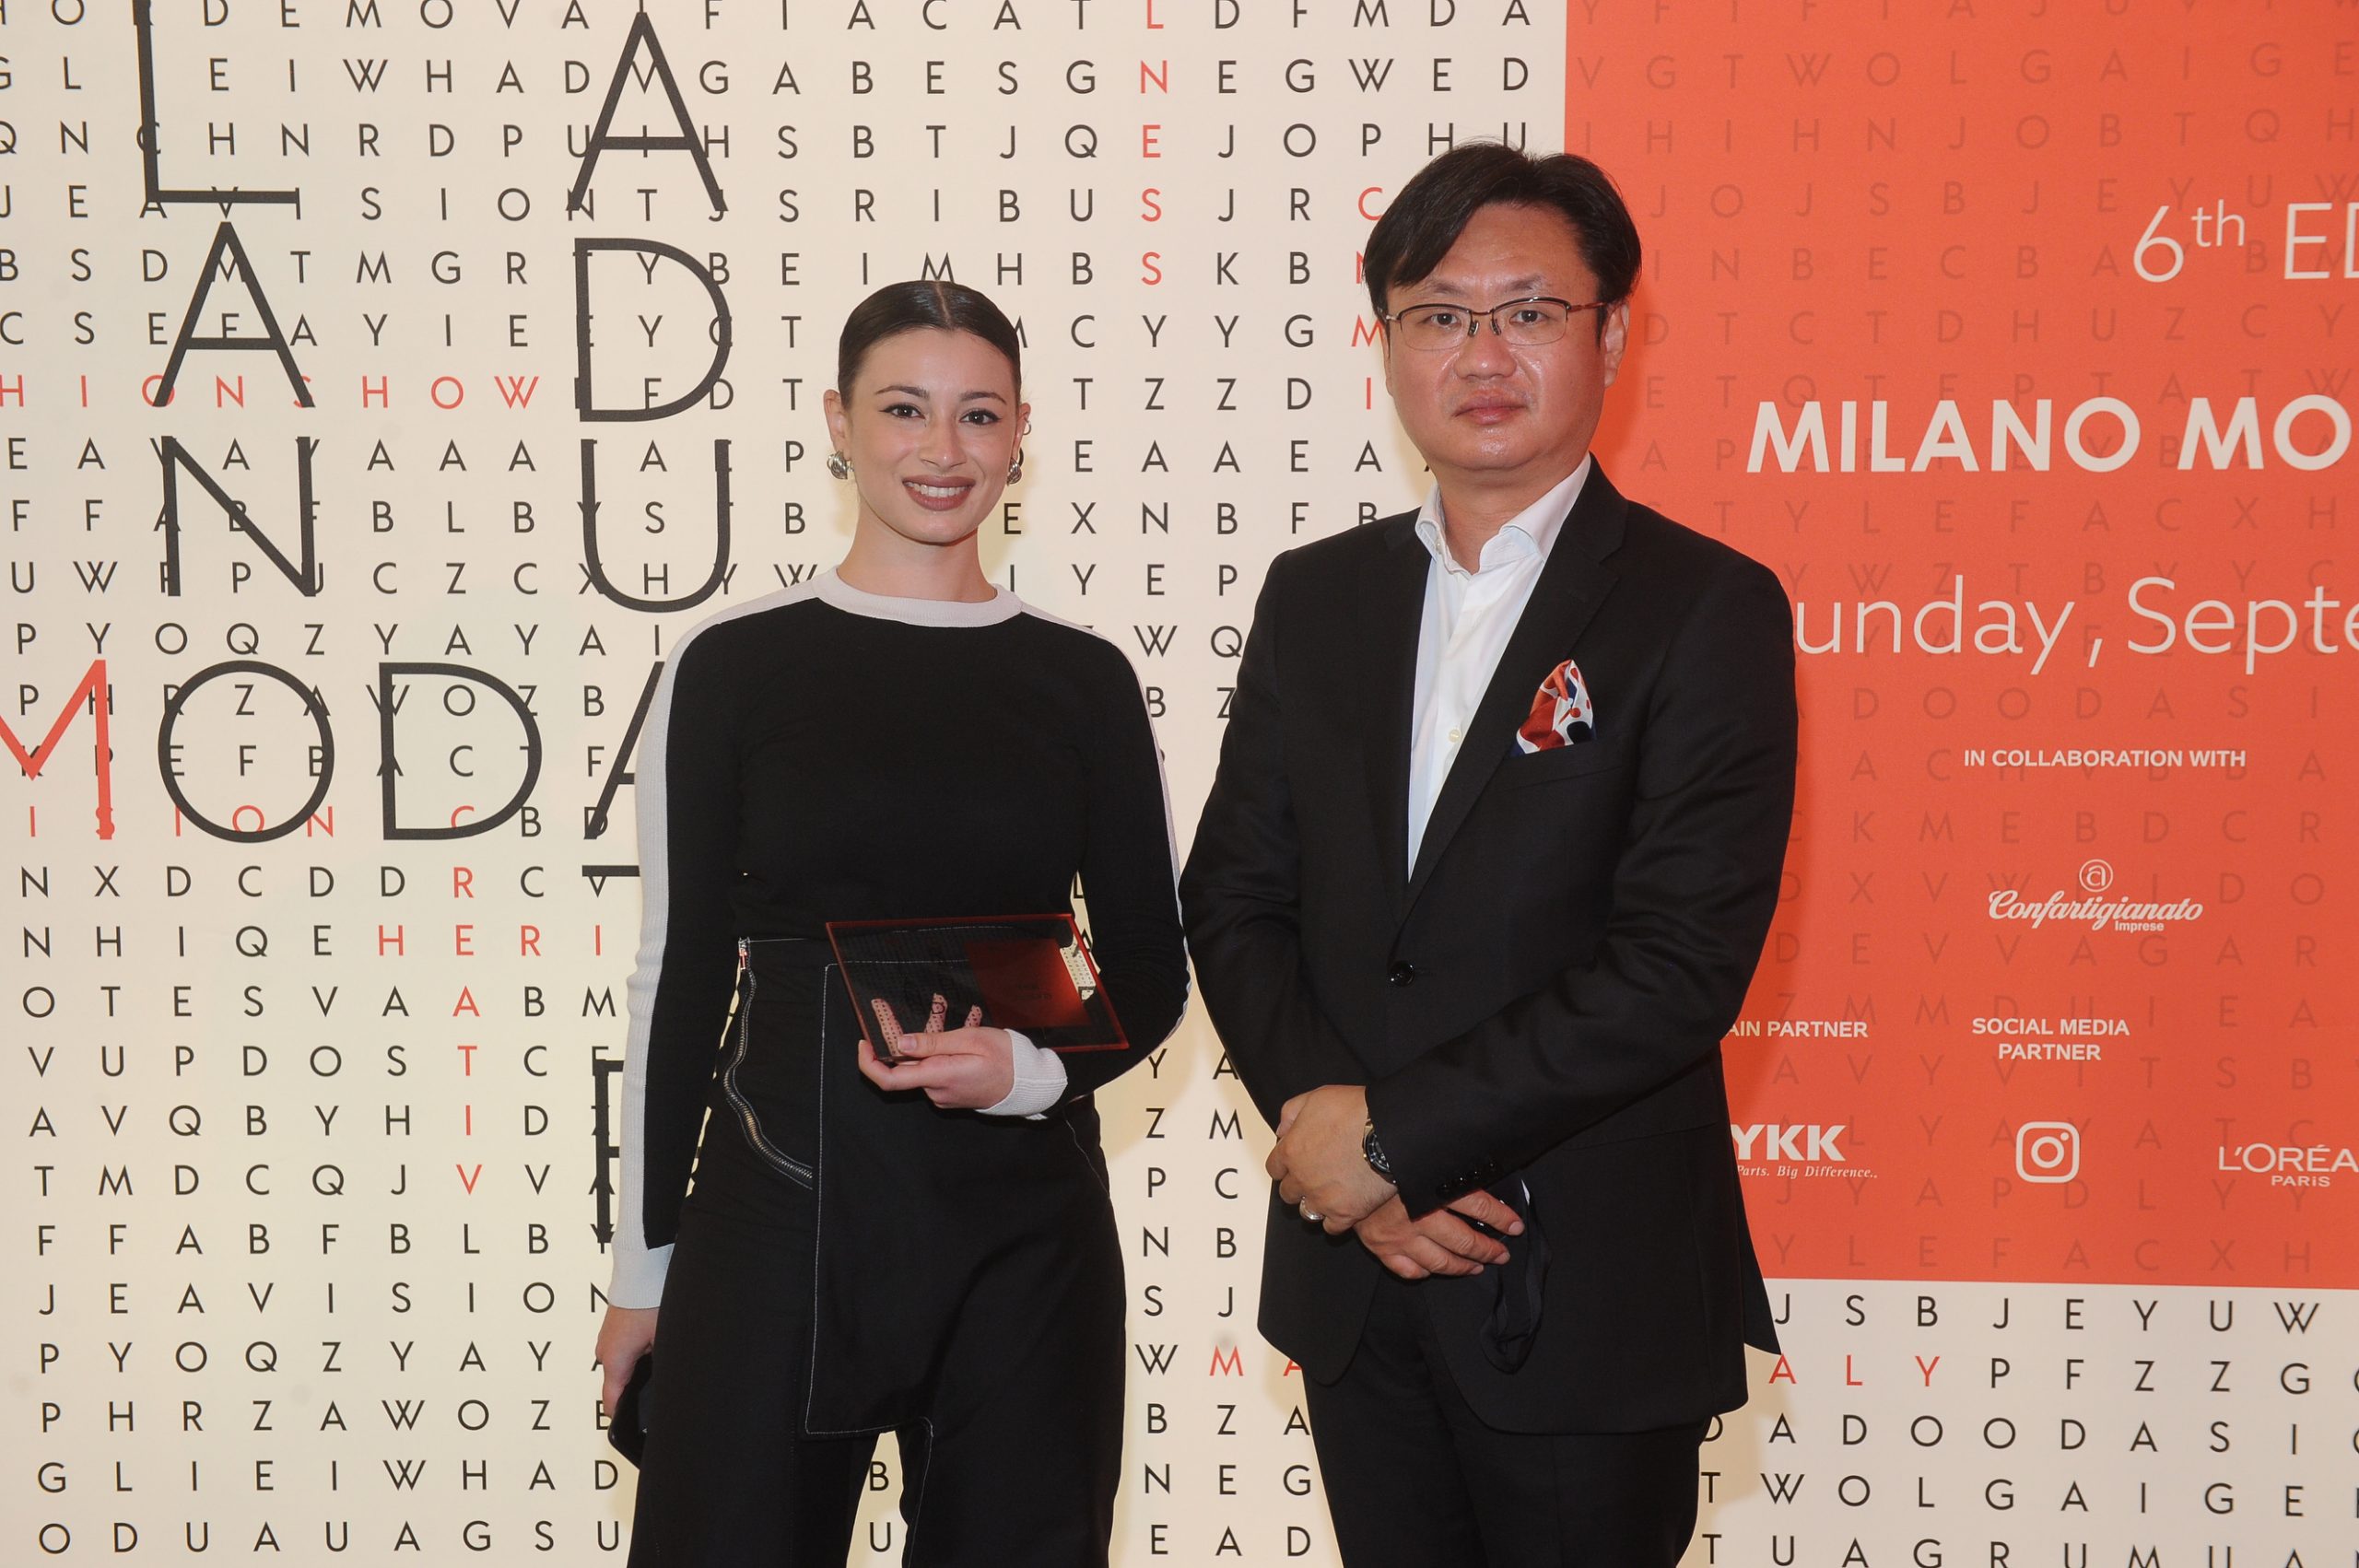 Milano Moda Graduate, ecco i vincitori tra i migliori talenti delle scuole di moda italiane